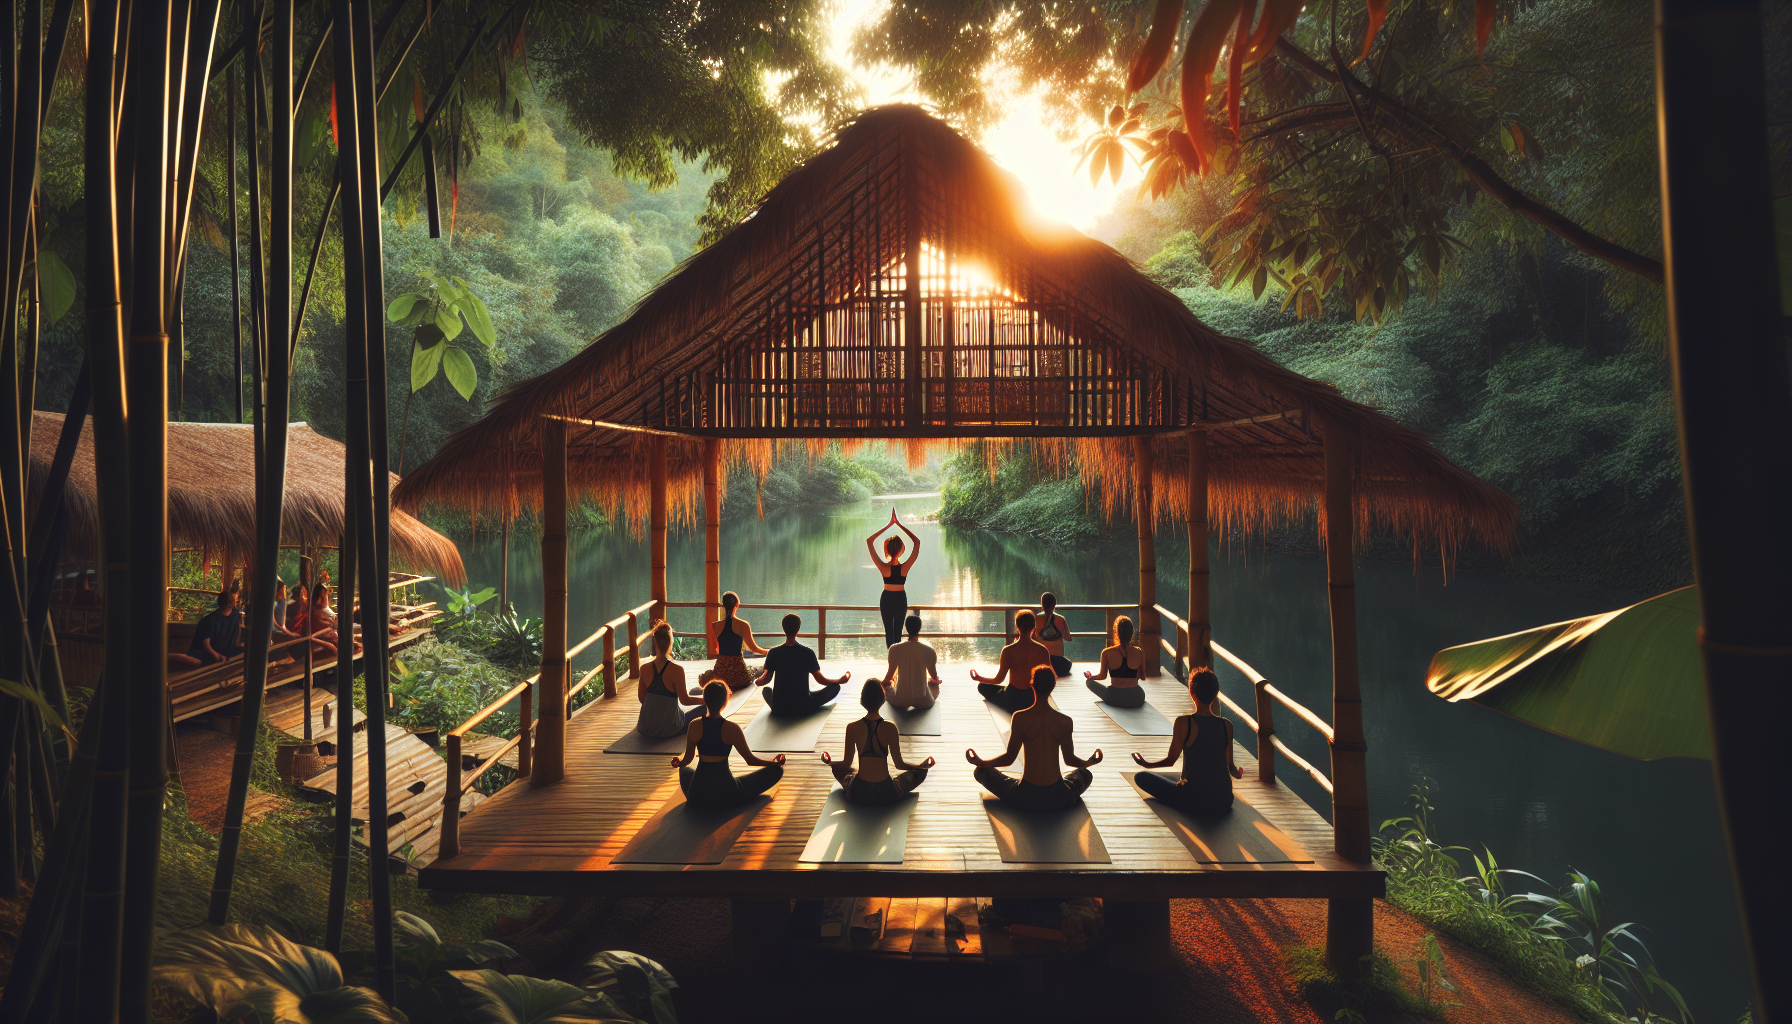 Namkhan's Luang Prabang Yoga Studio